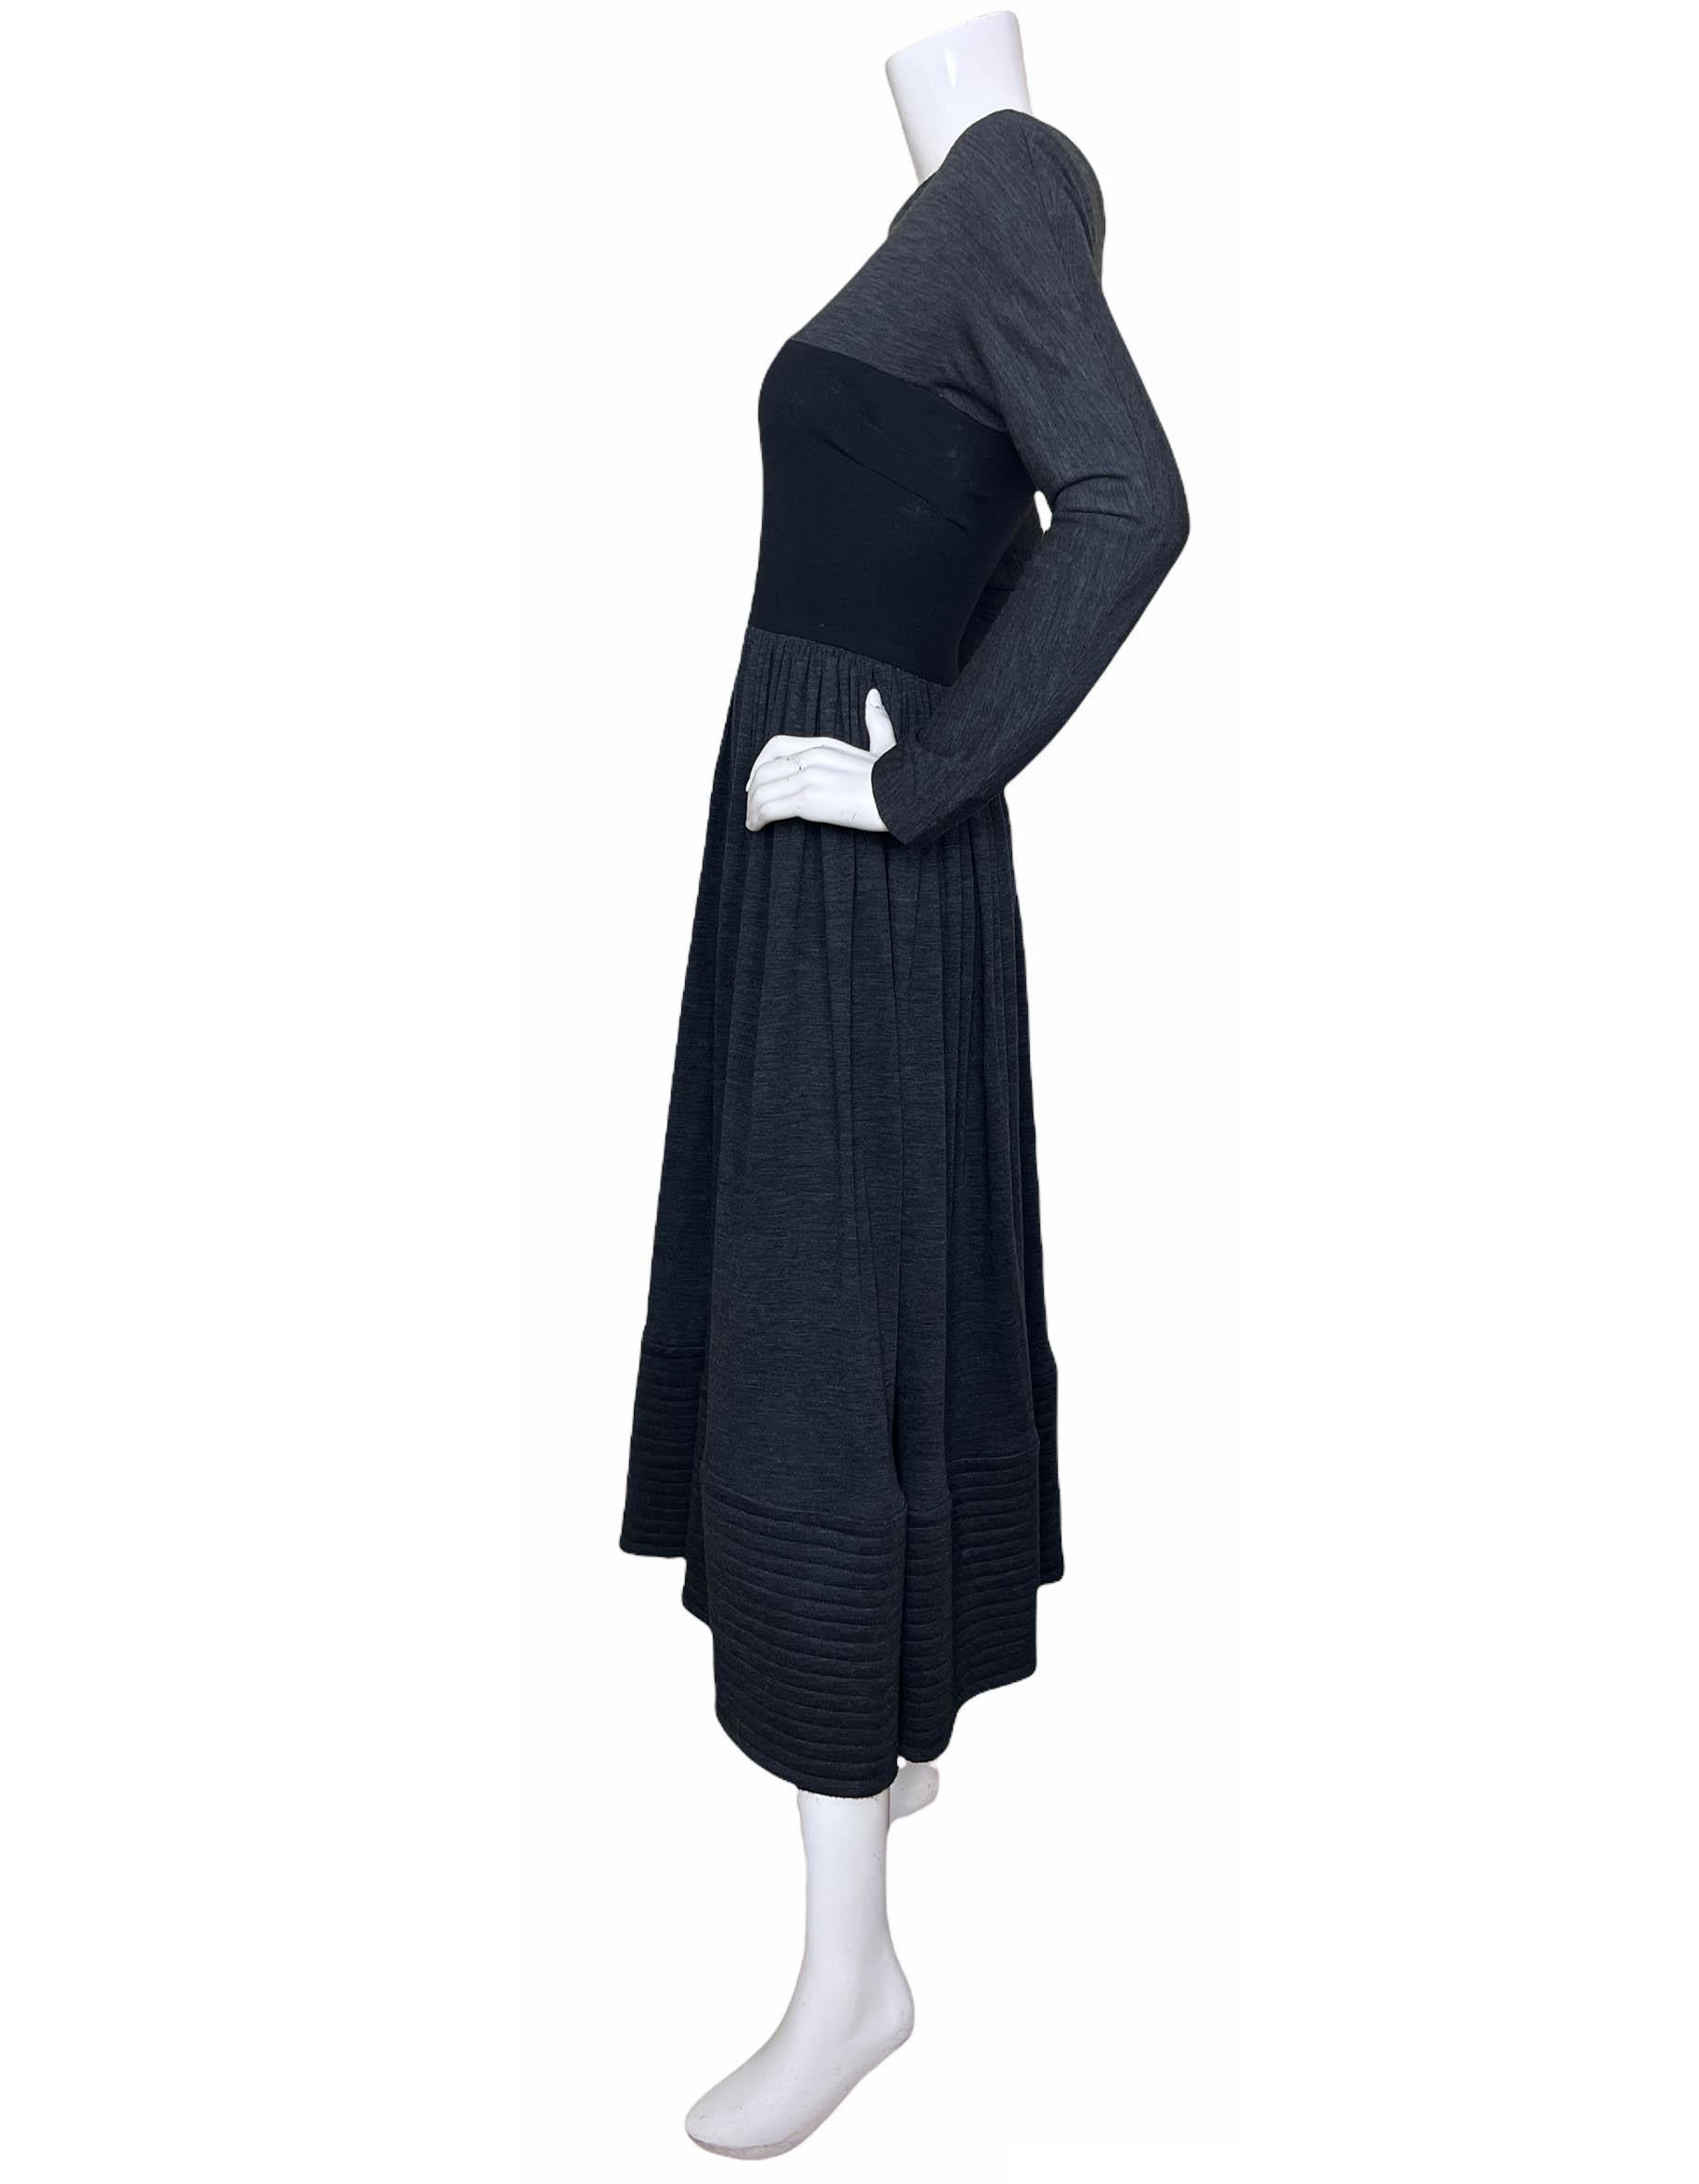 Geoffrey Beene Grey Longsleeve Jersey Dress w/ Black Bodice sz S For Sale 6